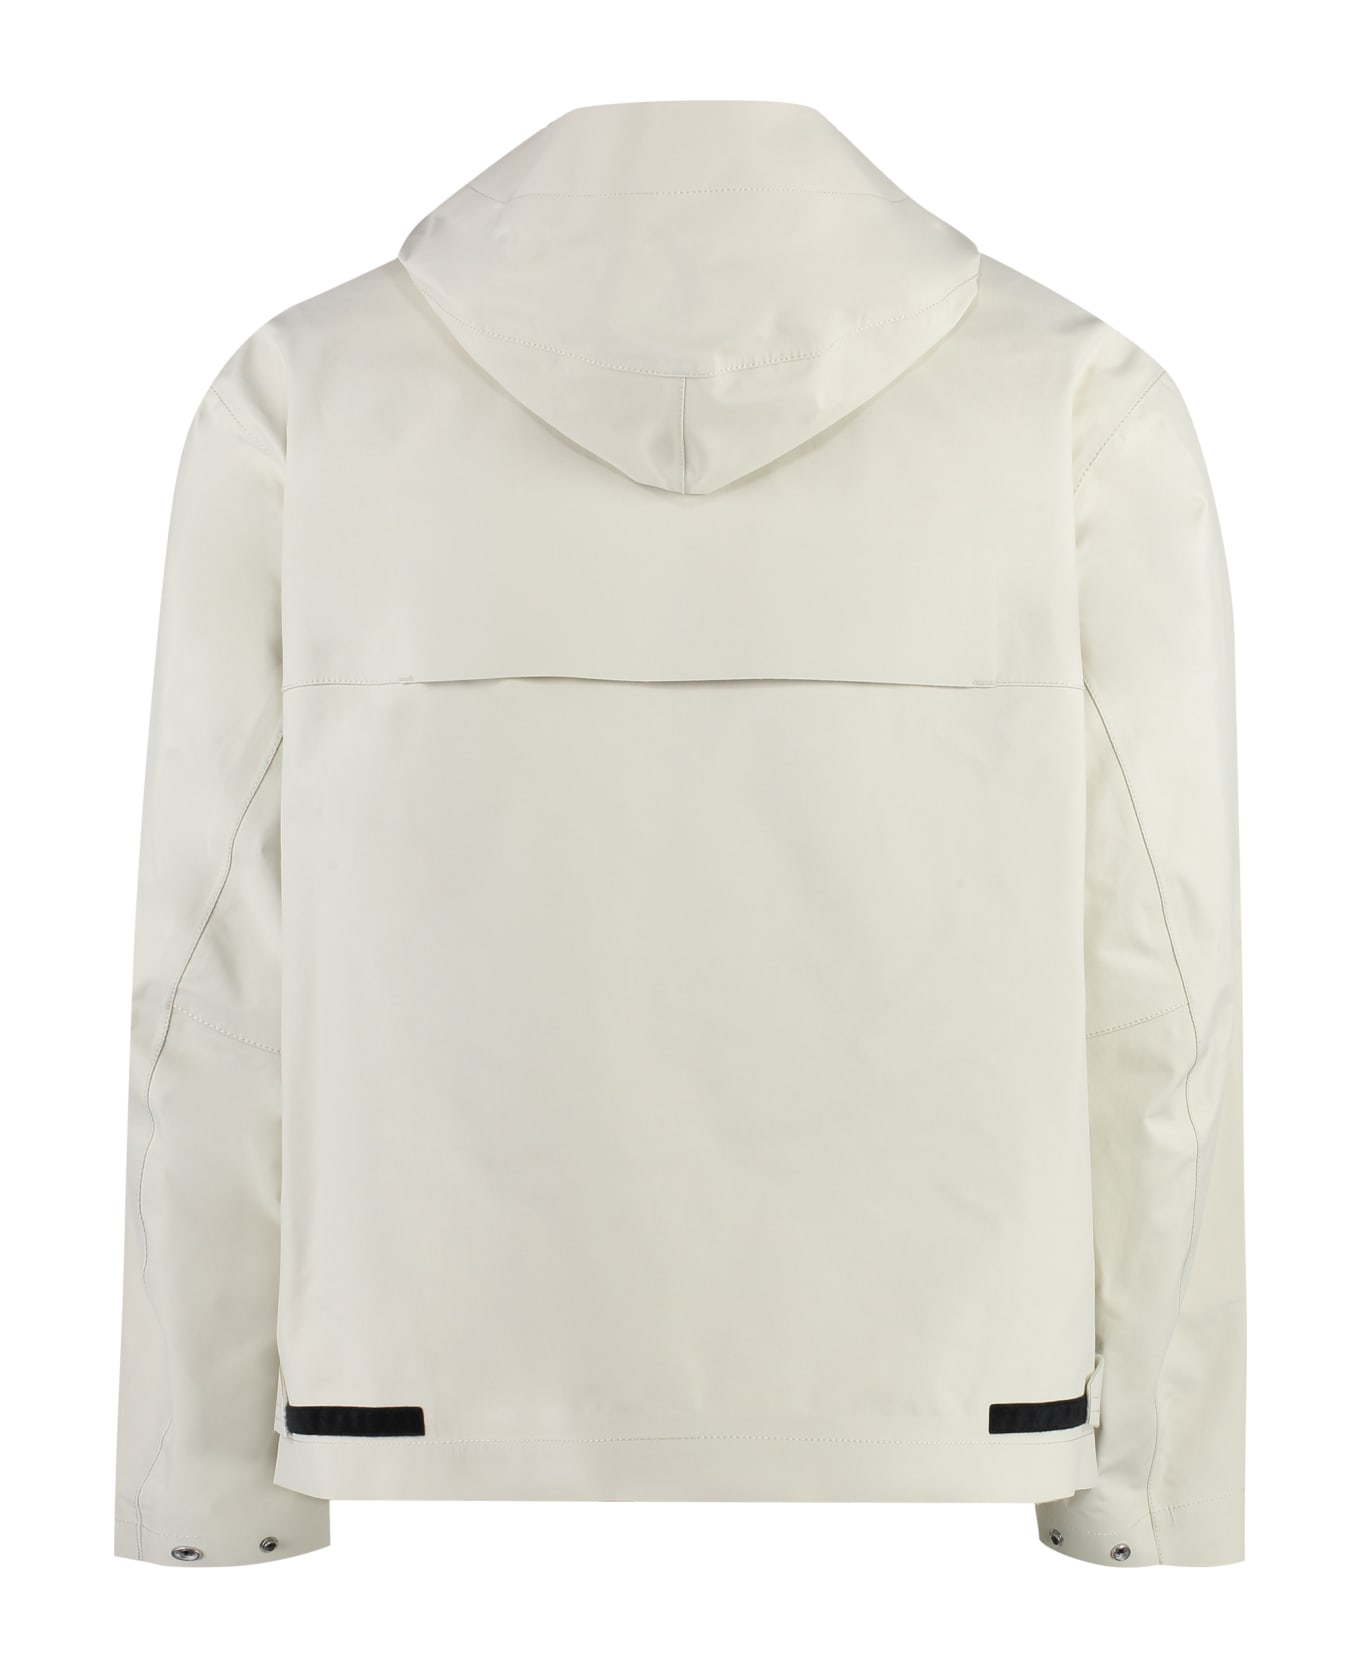 Stone Island Technical Fabric Hooded Jacket - Ivory